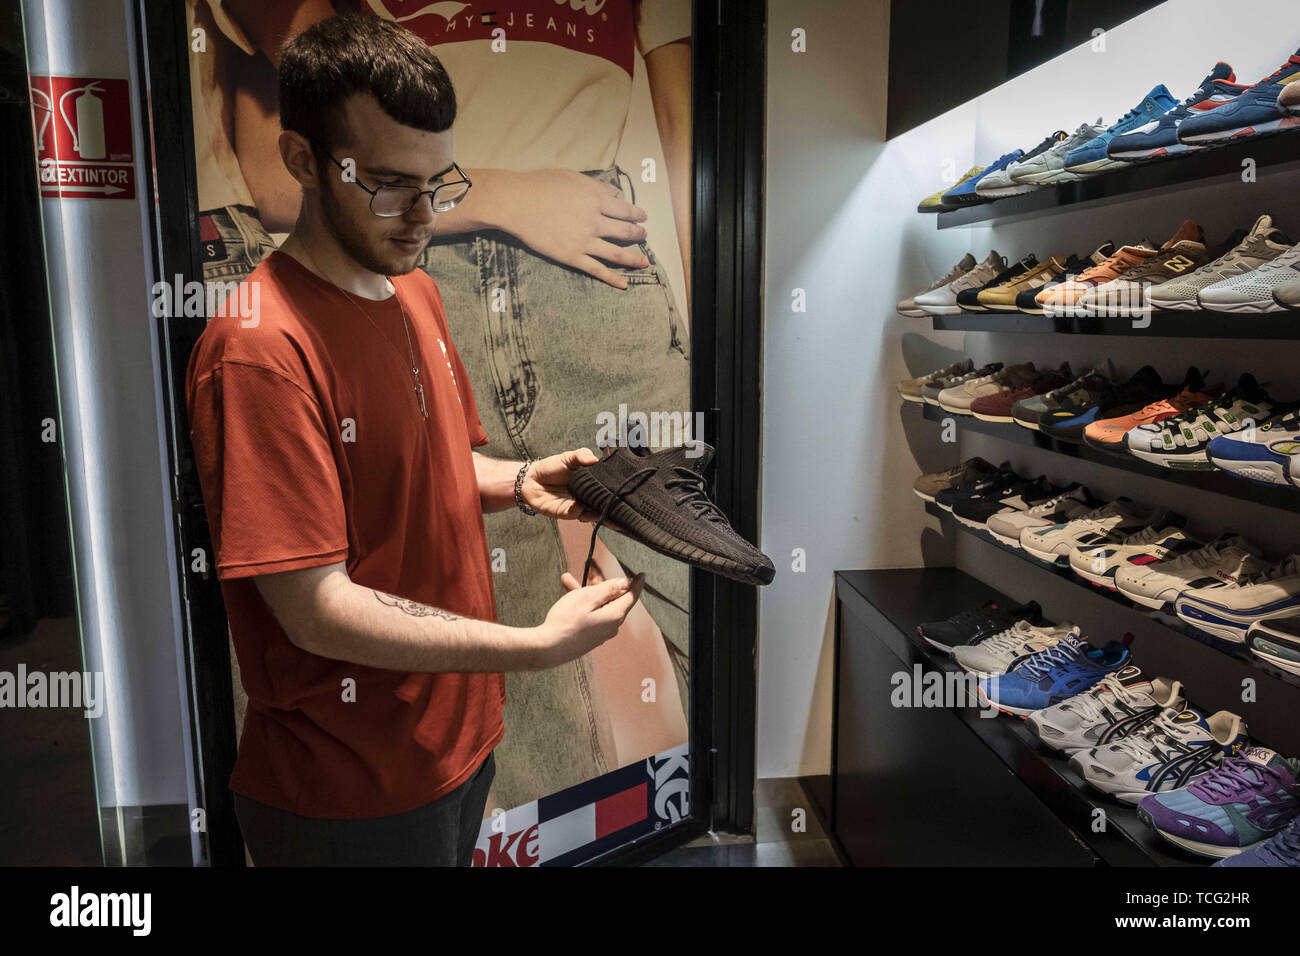 Barcelone, Catalogne, Espagne. 7 juin, 2019. Un vendeur montre la nouvelle chaussure  Adidas Yeezy Boost 350 modèle à la boutique revendeur.Le fabricant allemand  de chaussures de sport Adidas a lancé l'édition limitée